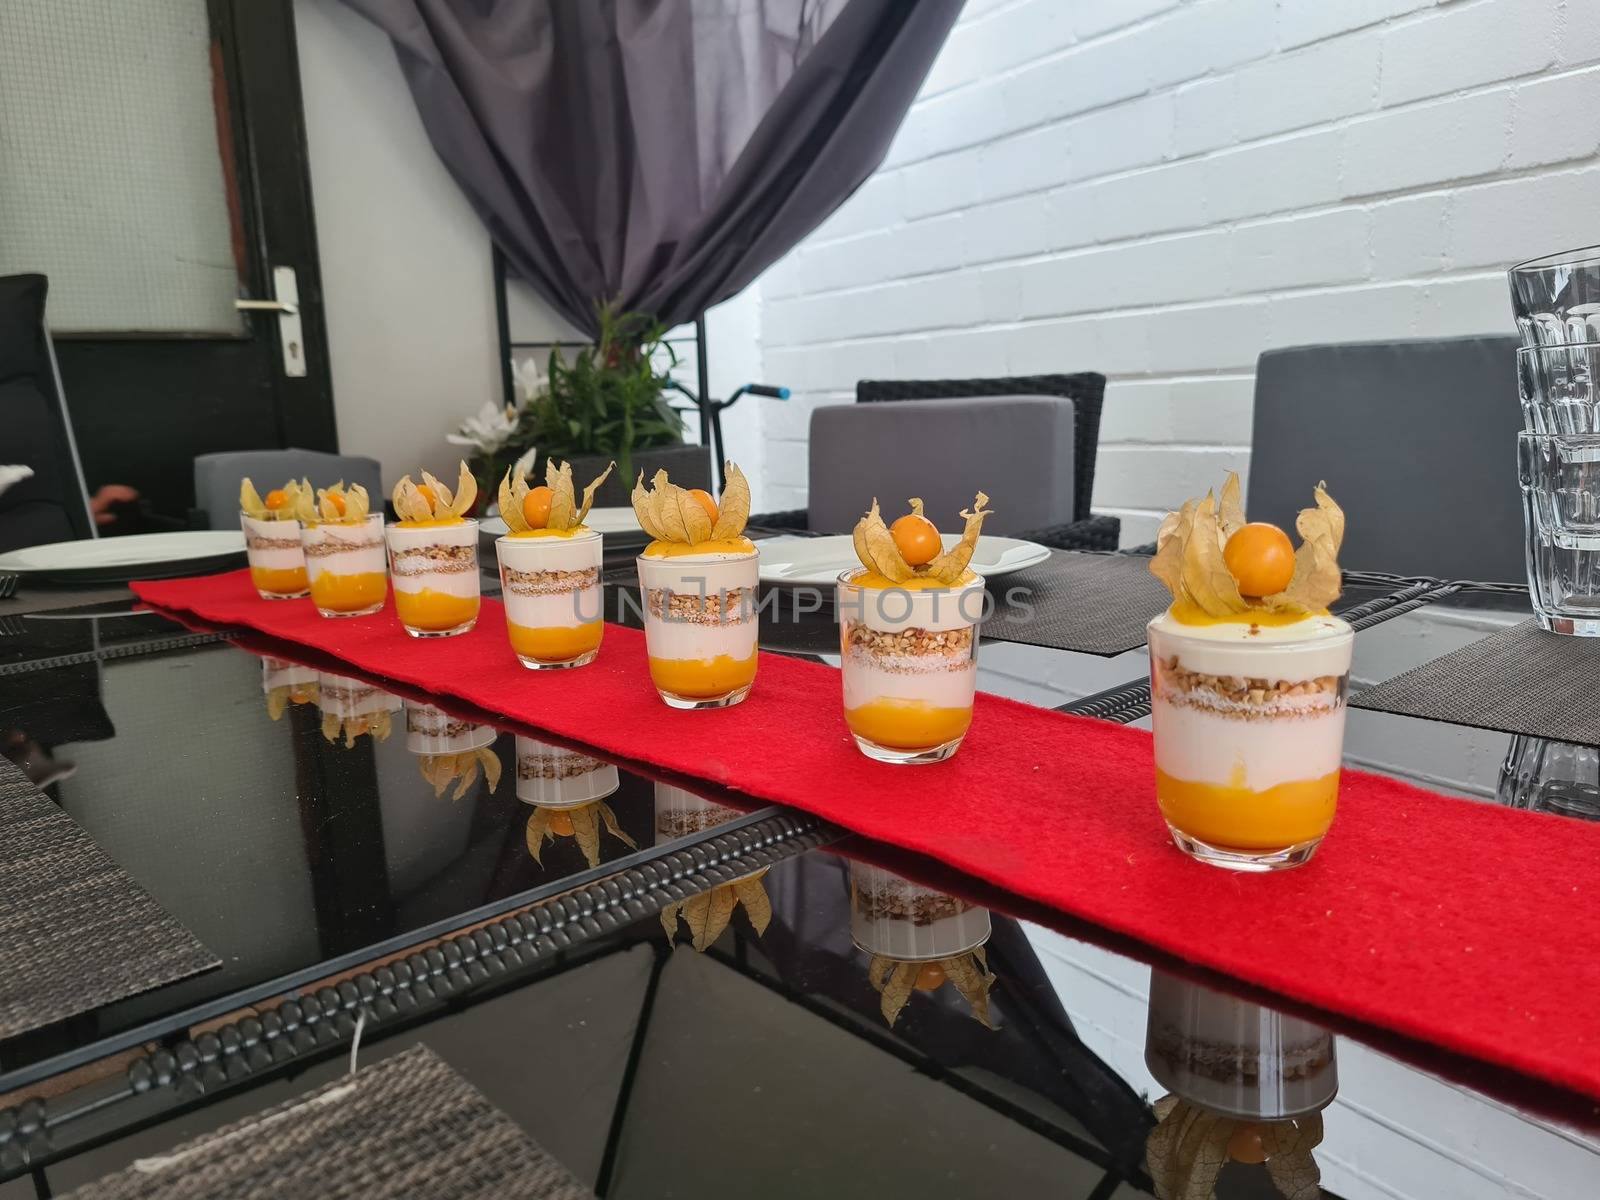 Layered cream desserts by JFsPic